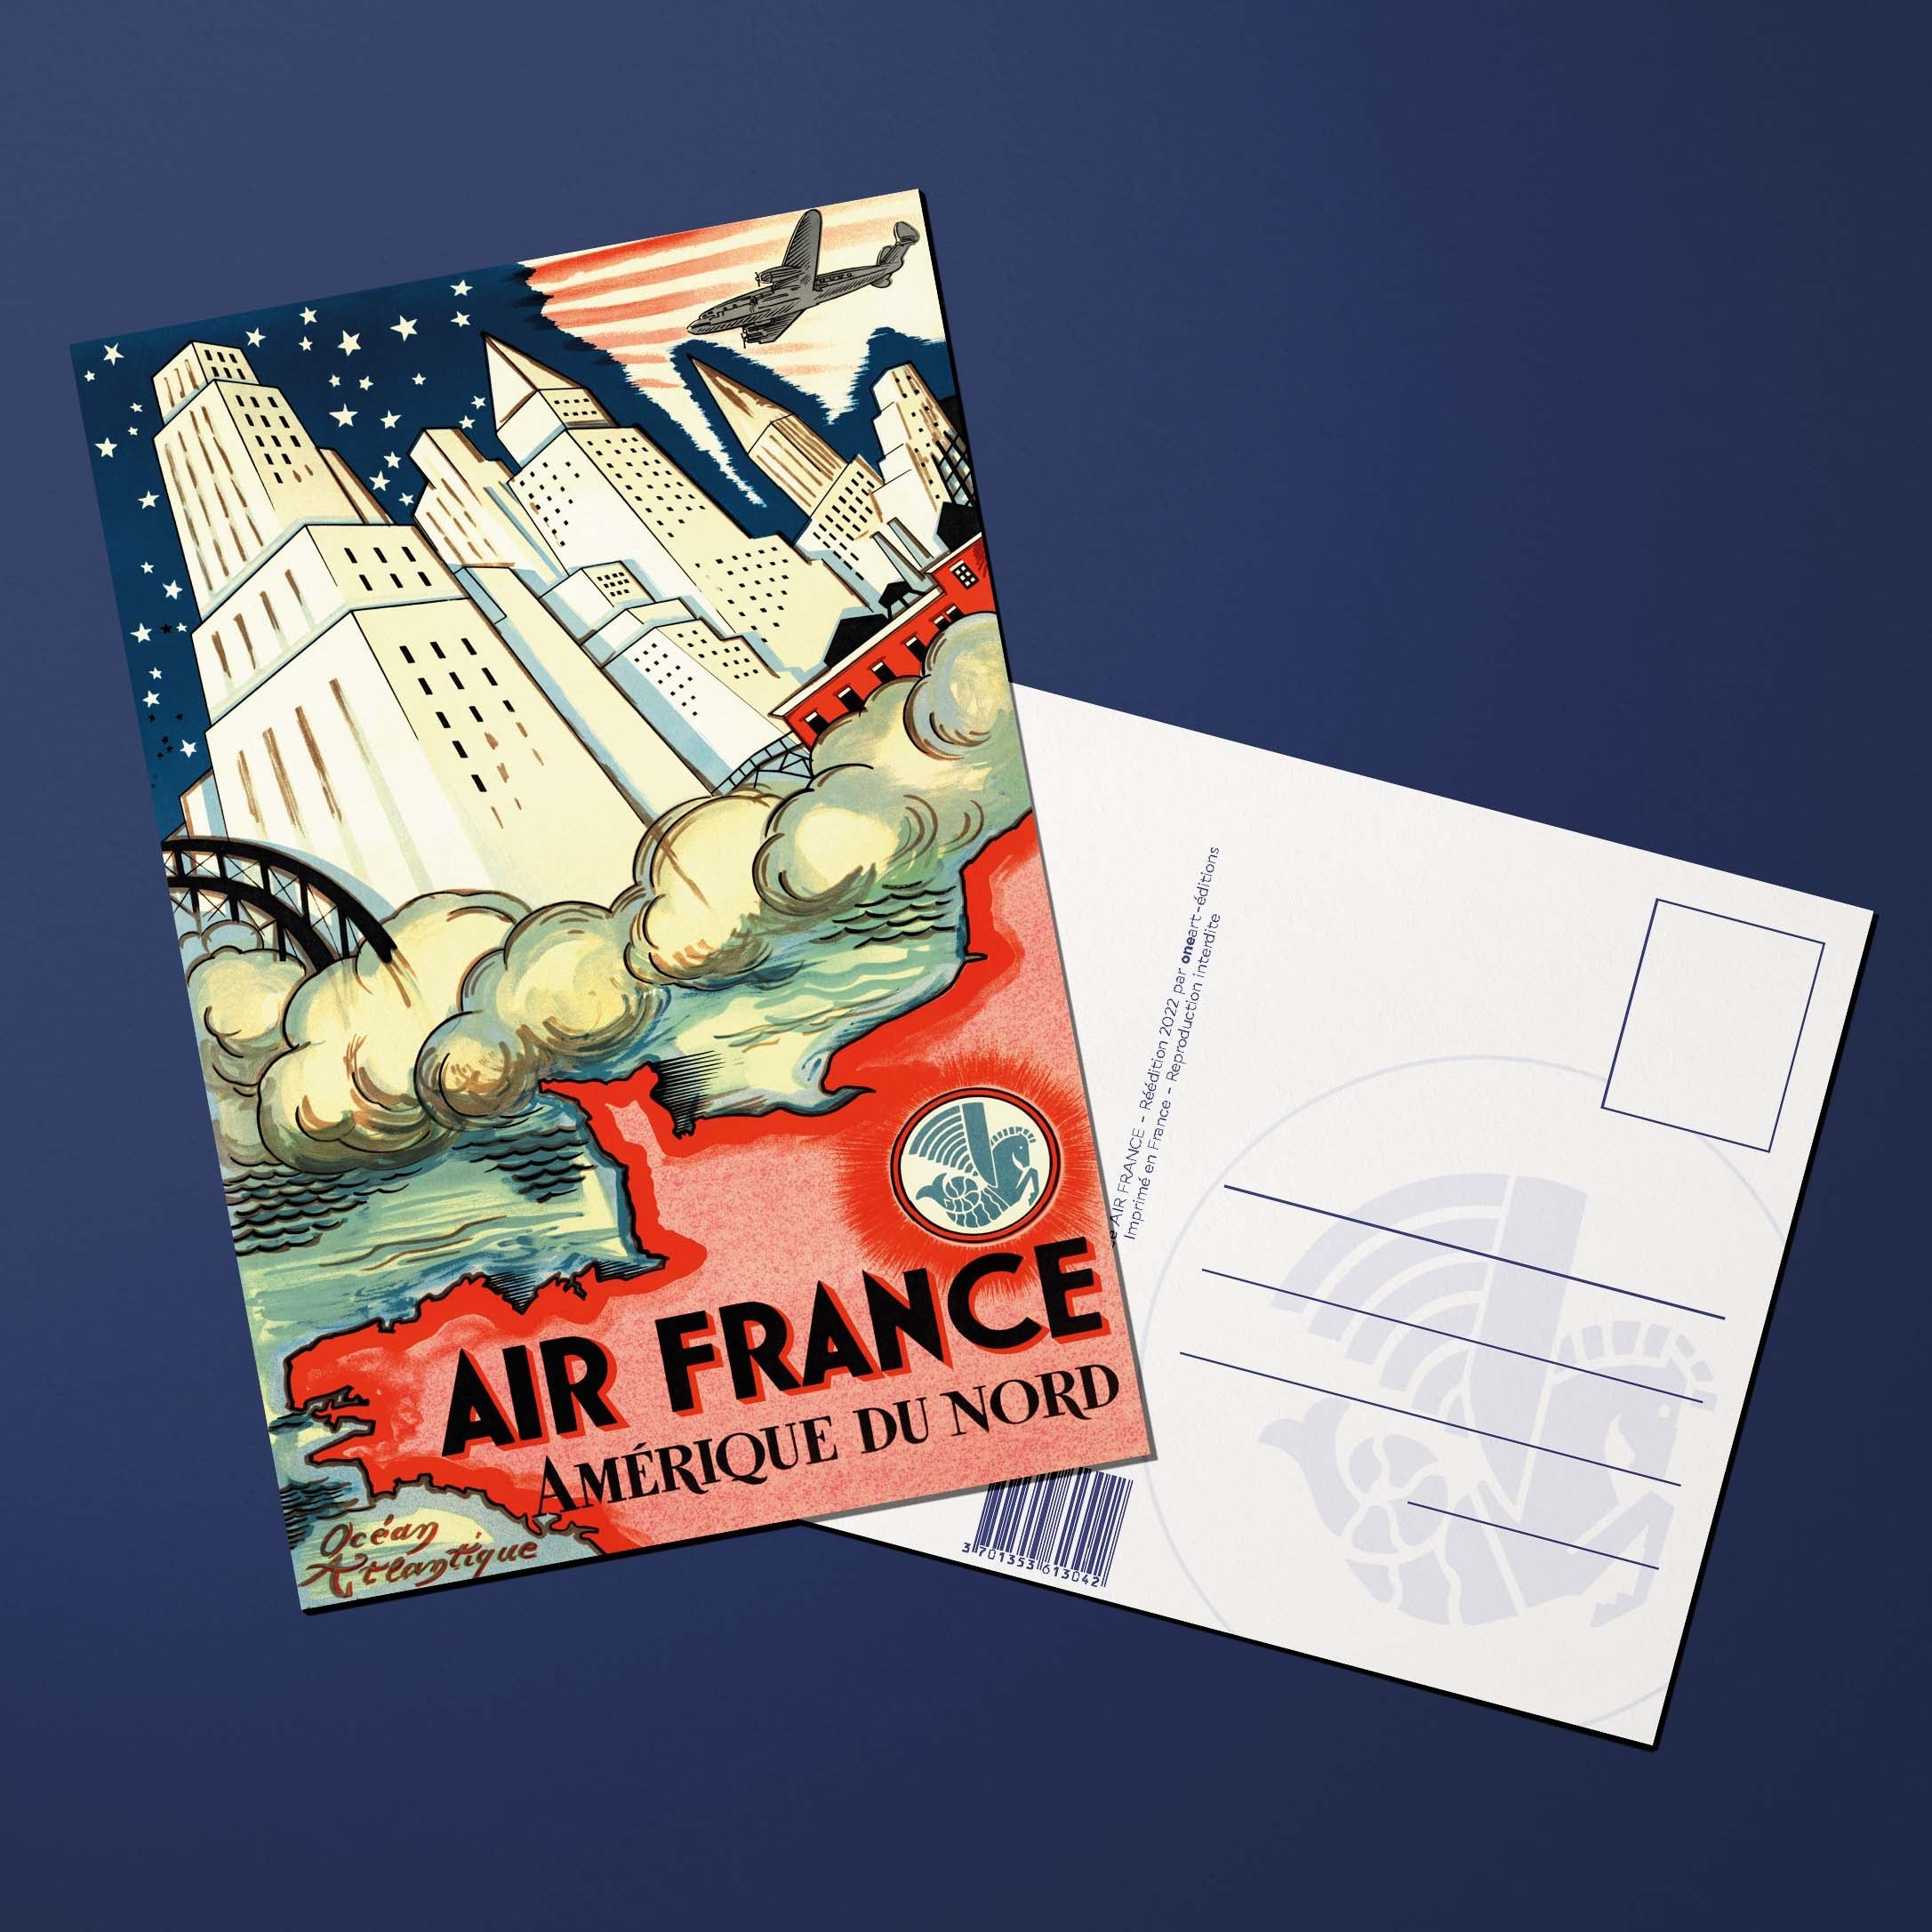 Carte postale Air France Legend Amérique du Nord, buildings